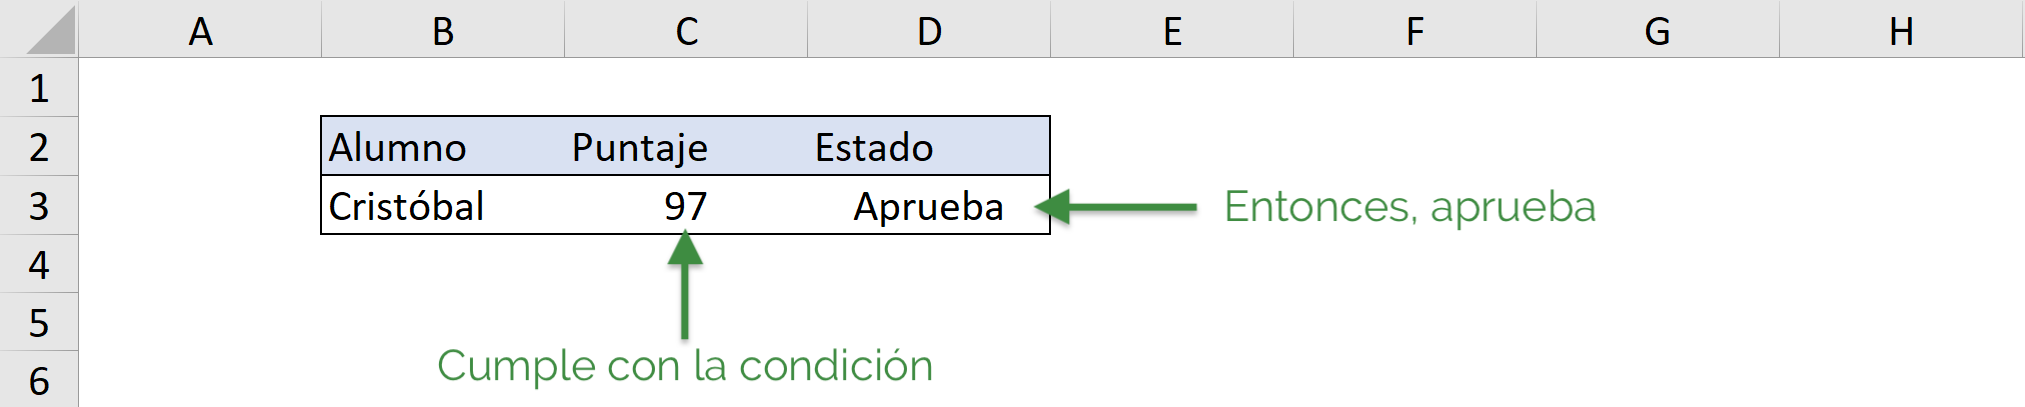 If-Then example in VBA in Excel, if met